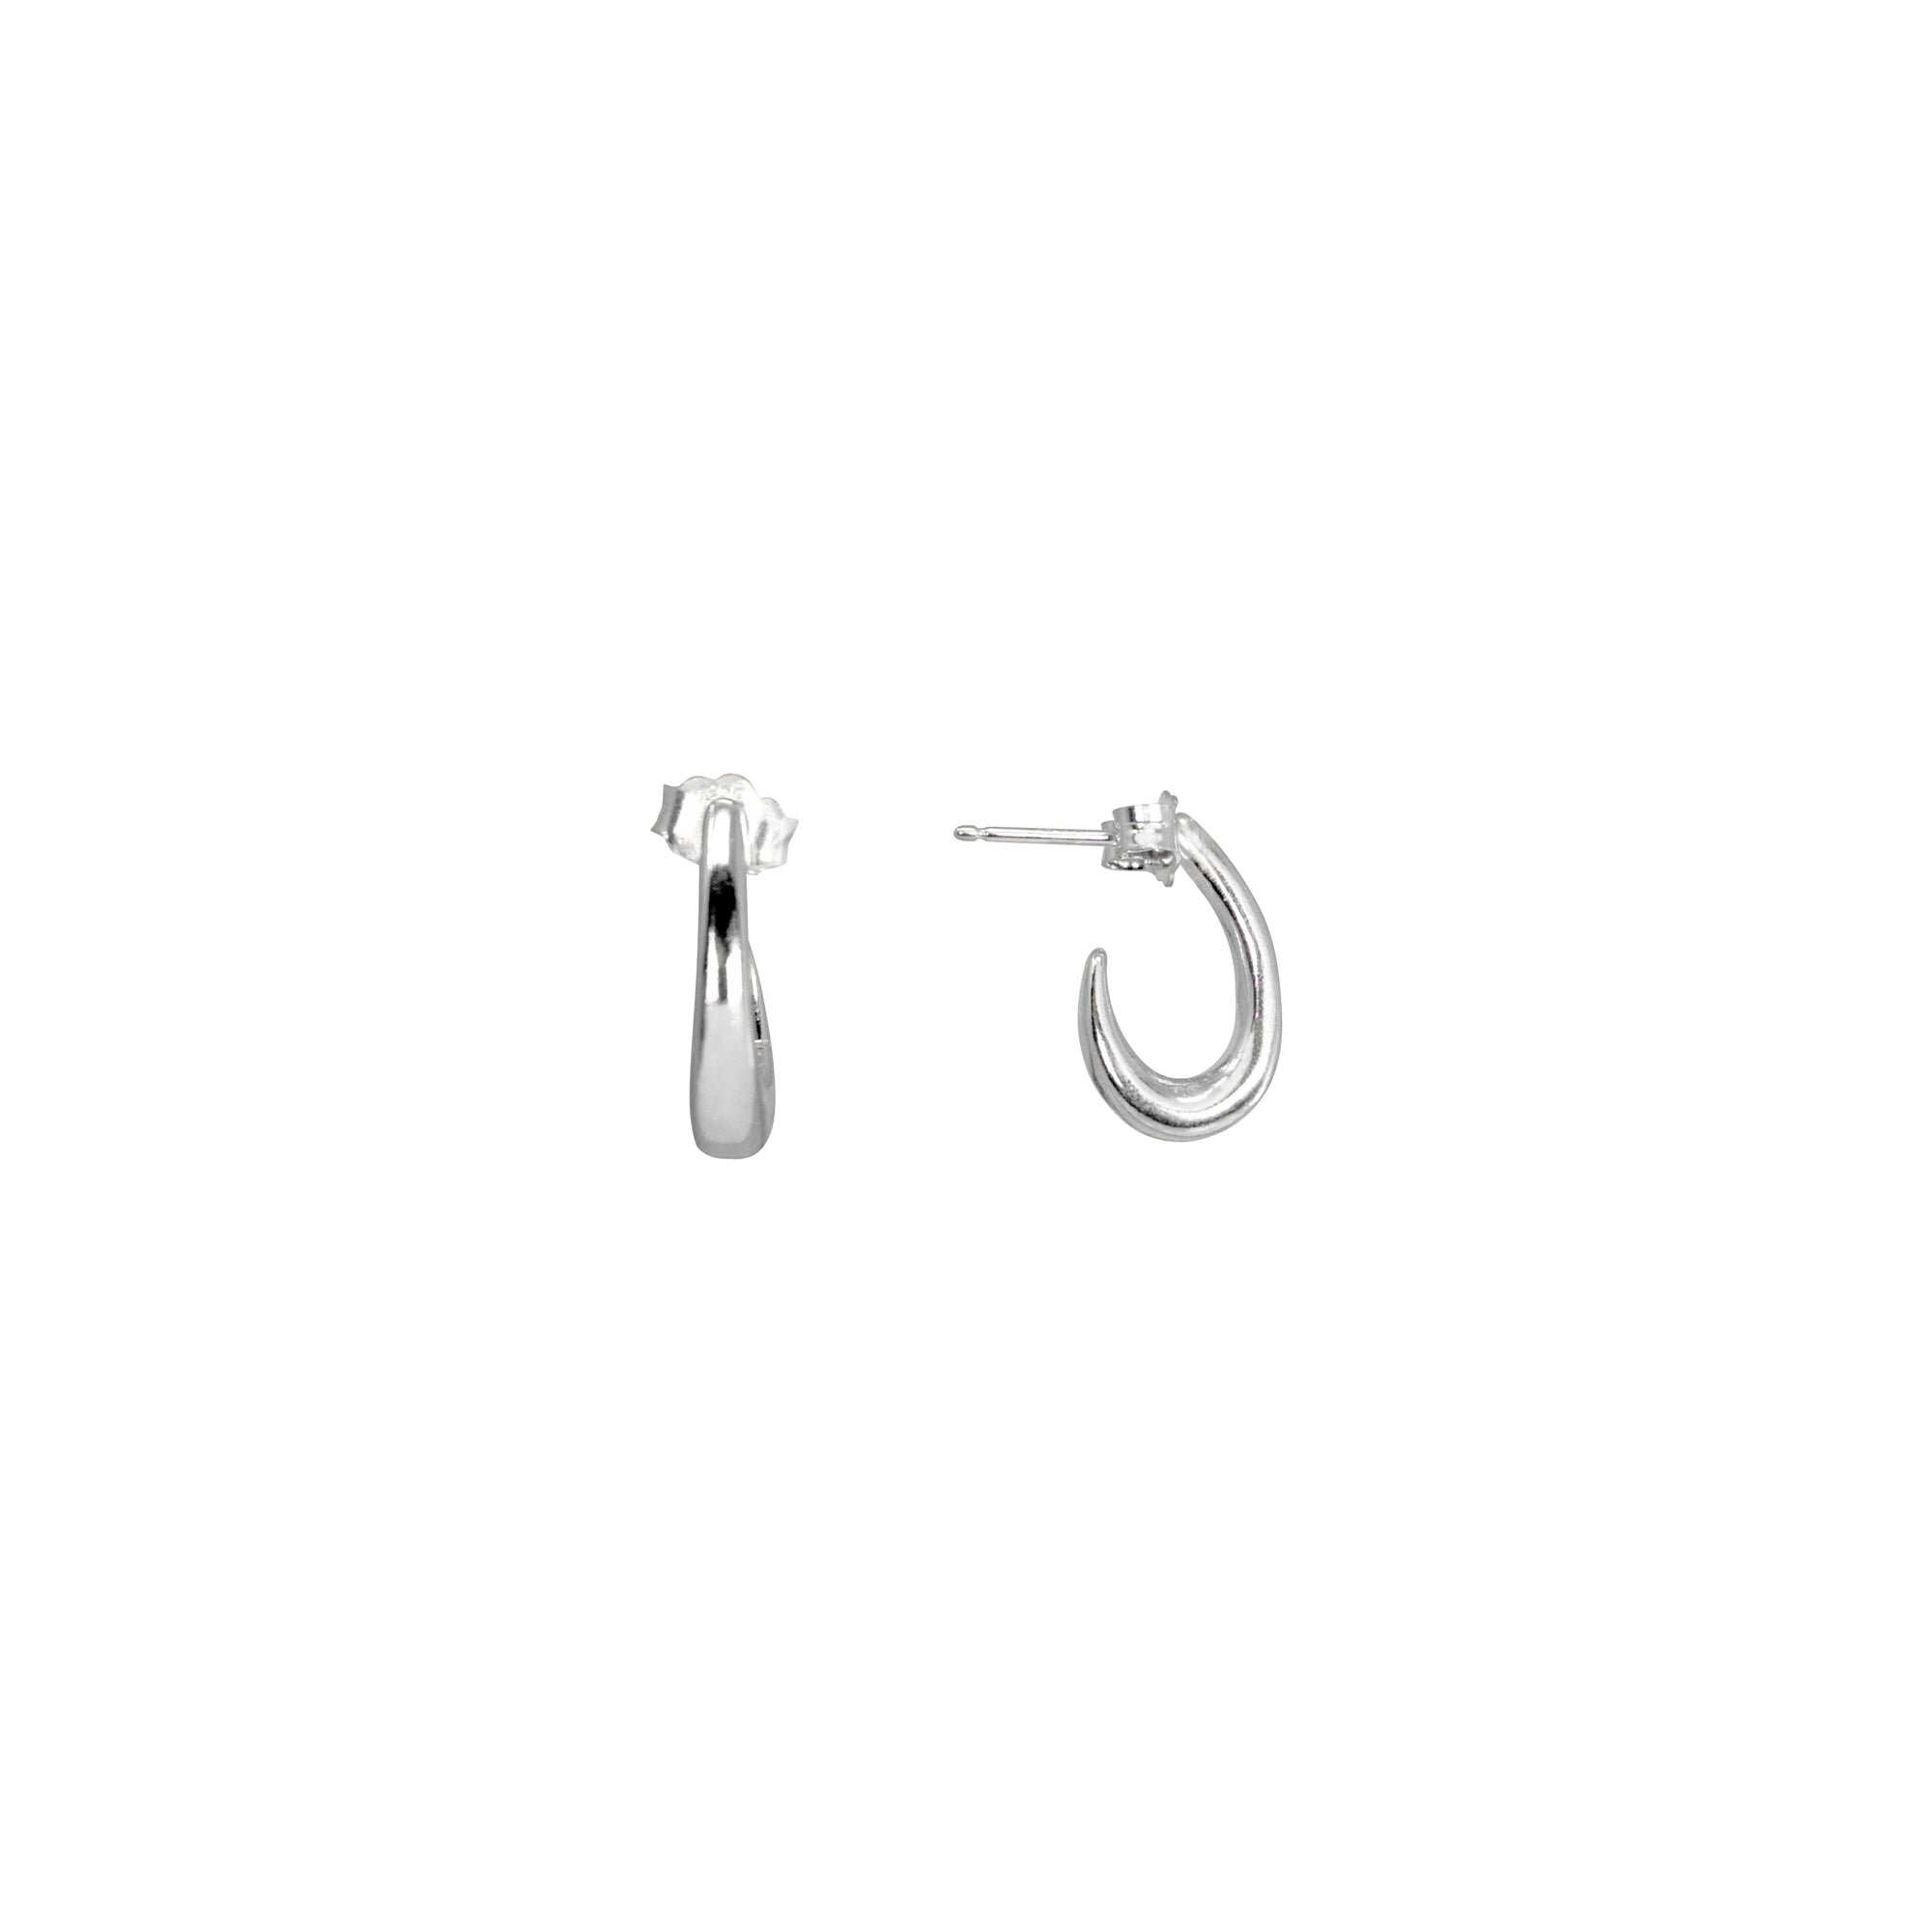 Saltwater hoop earrings